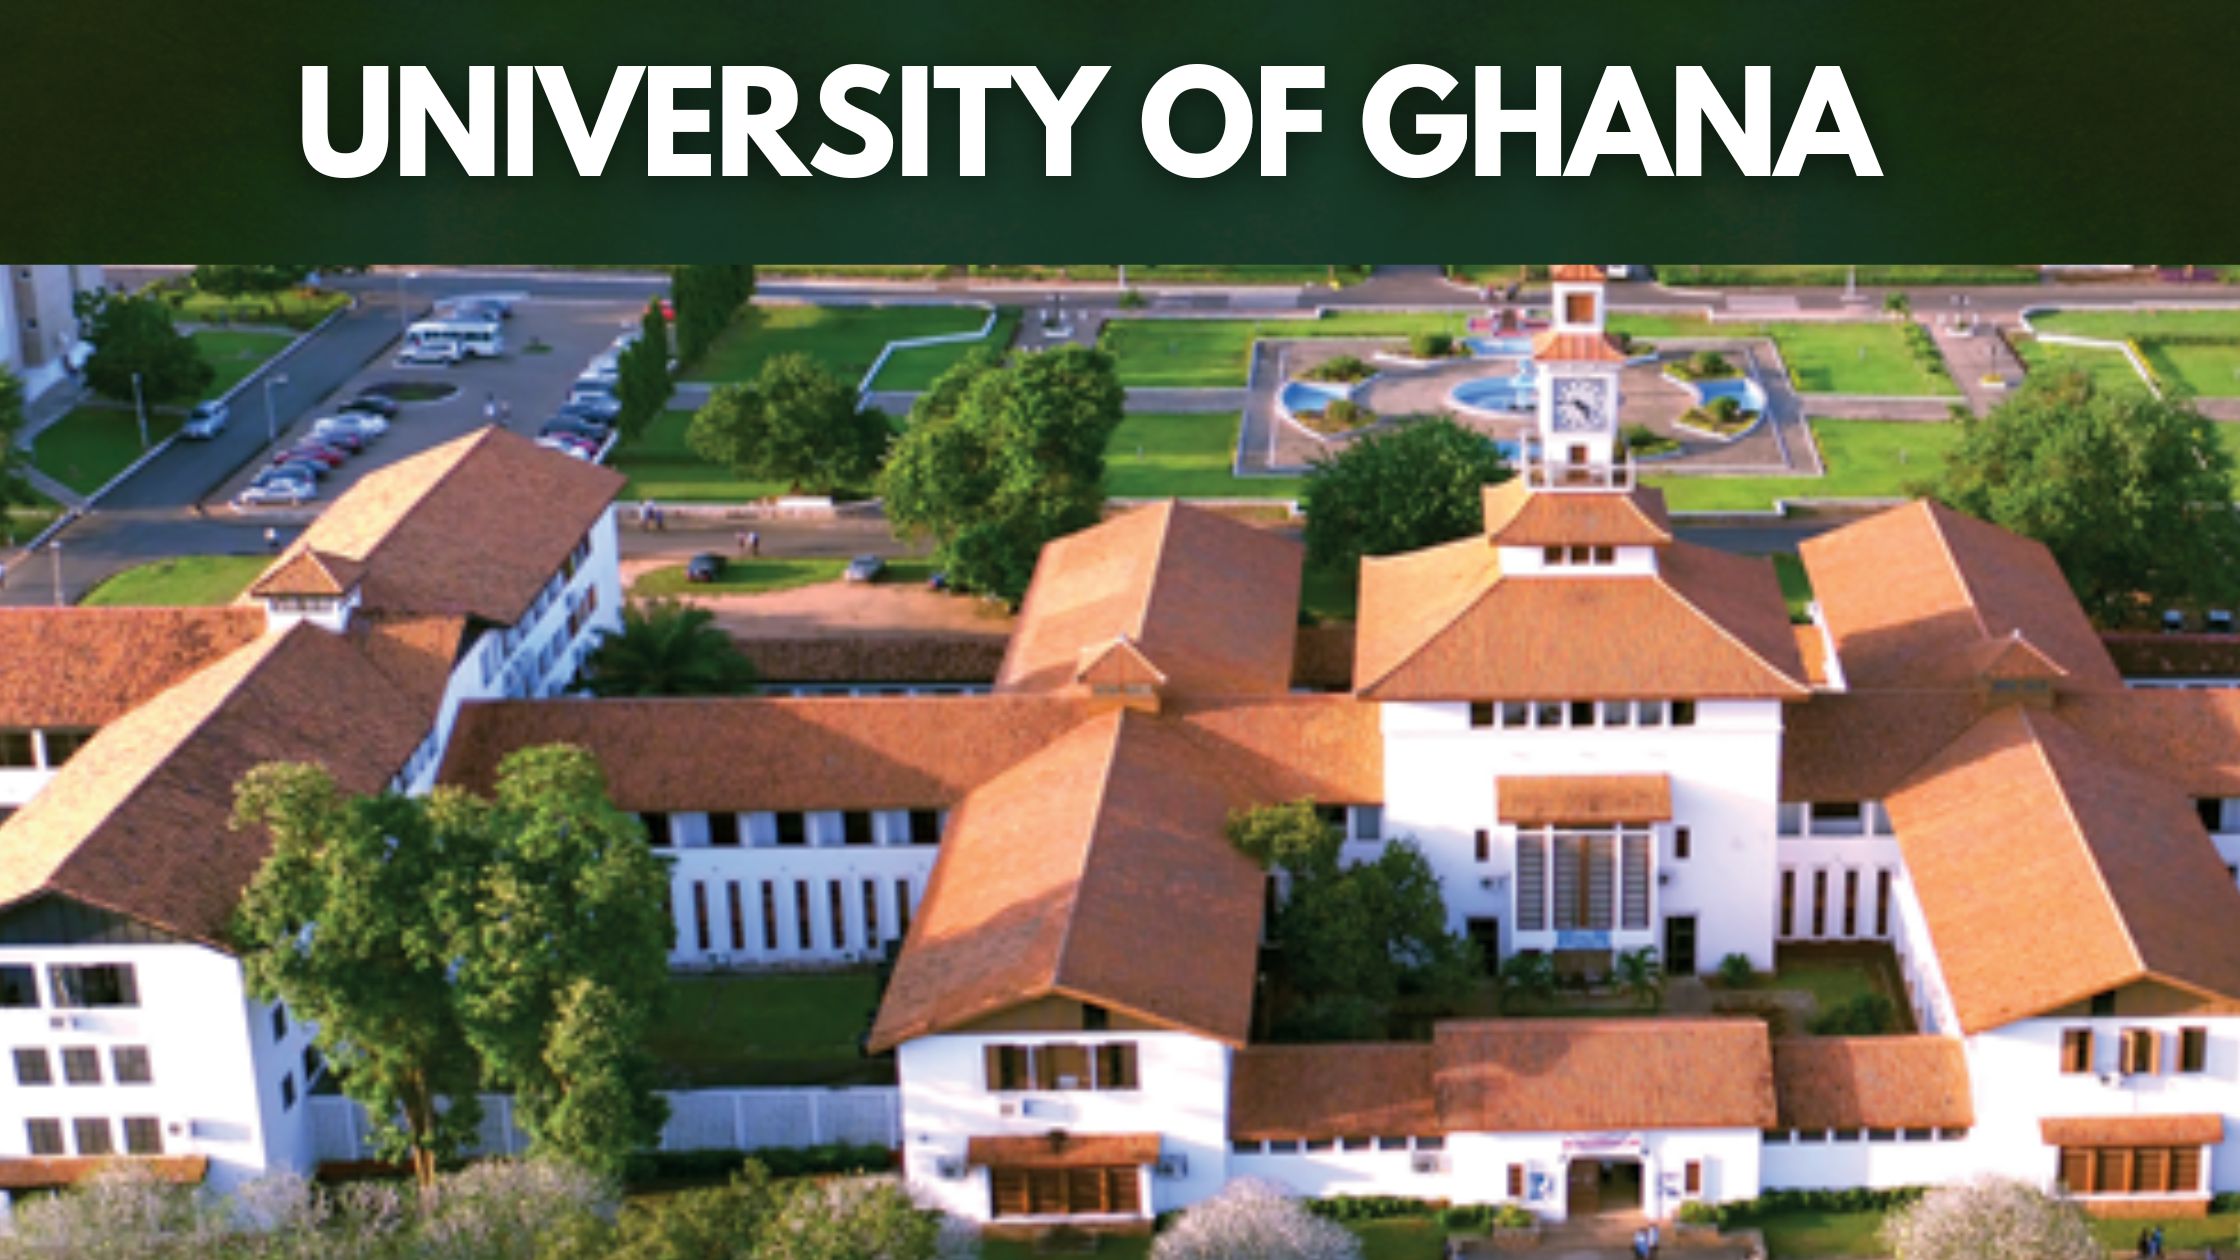 University of Ghana - oldest Universities in Africa